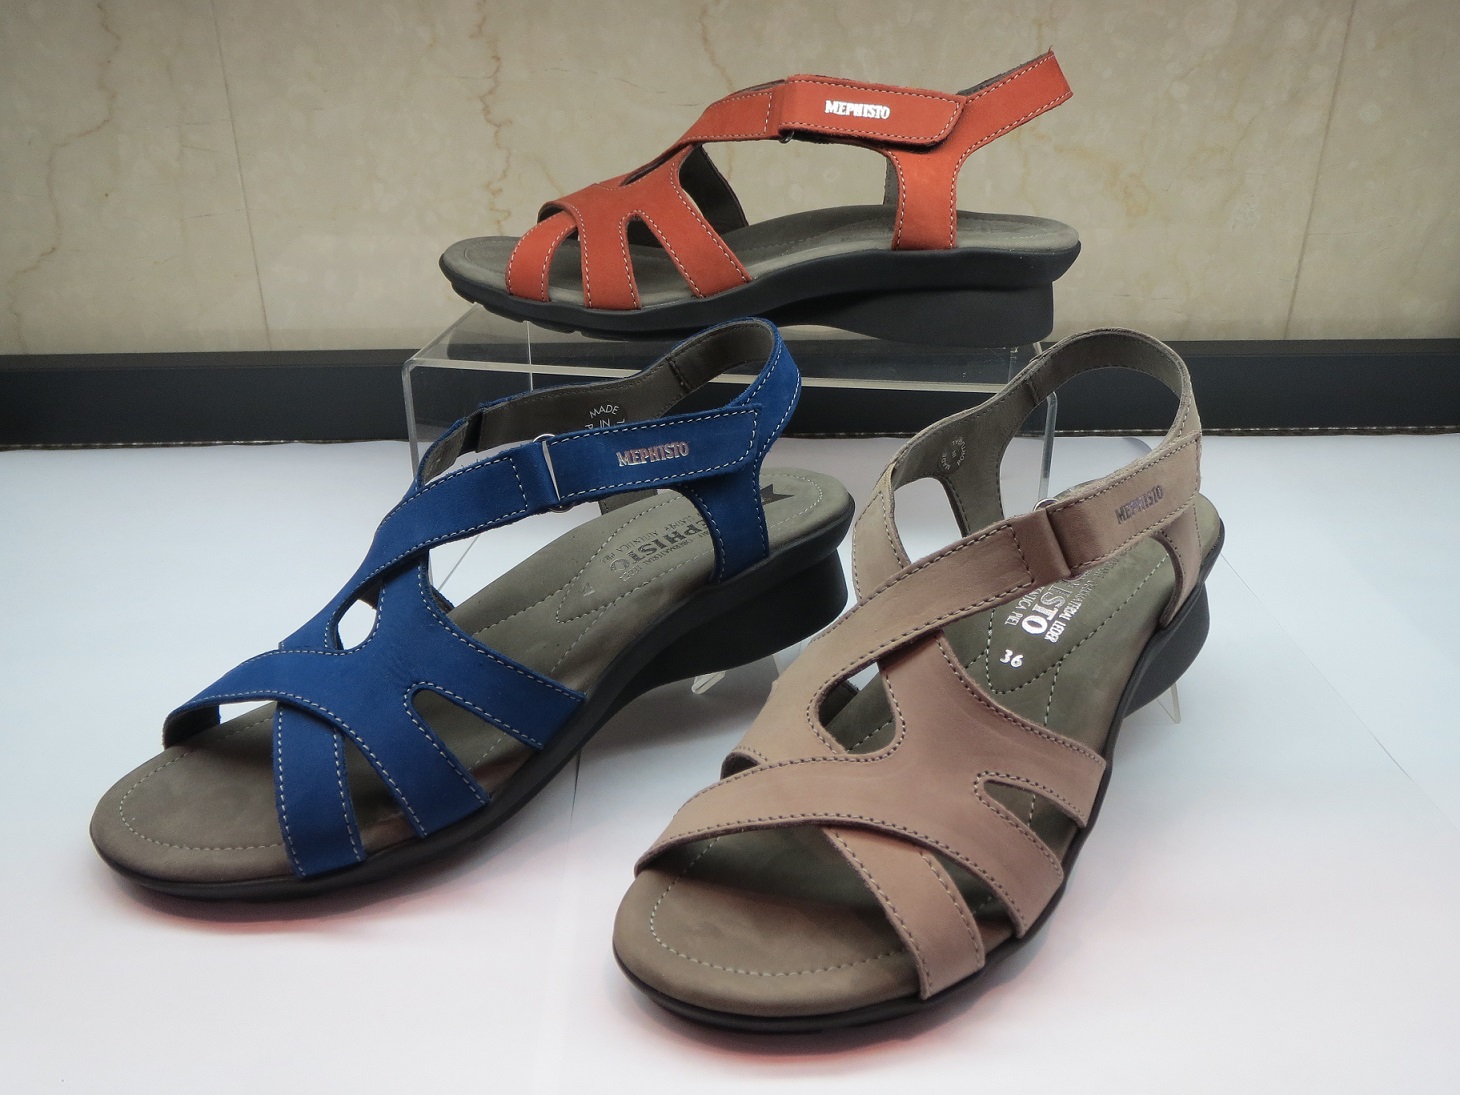 〈ショップ〉 メフィスト新作サンダル入荷しました。(2014/04/25)｜足と靴の研究所